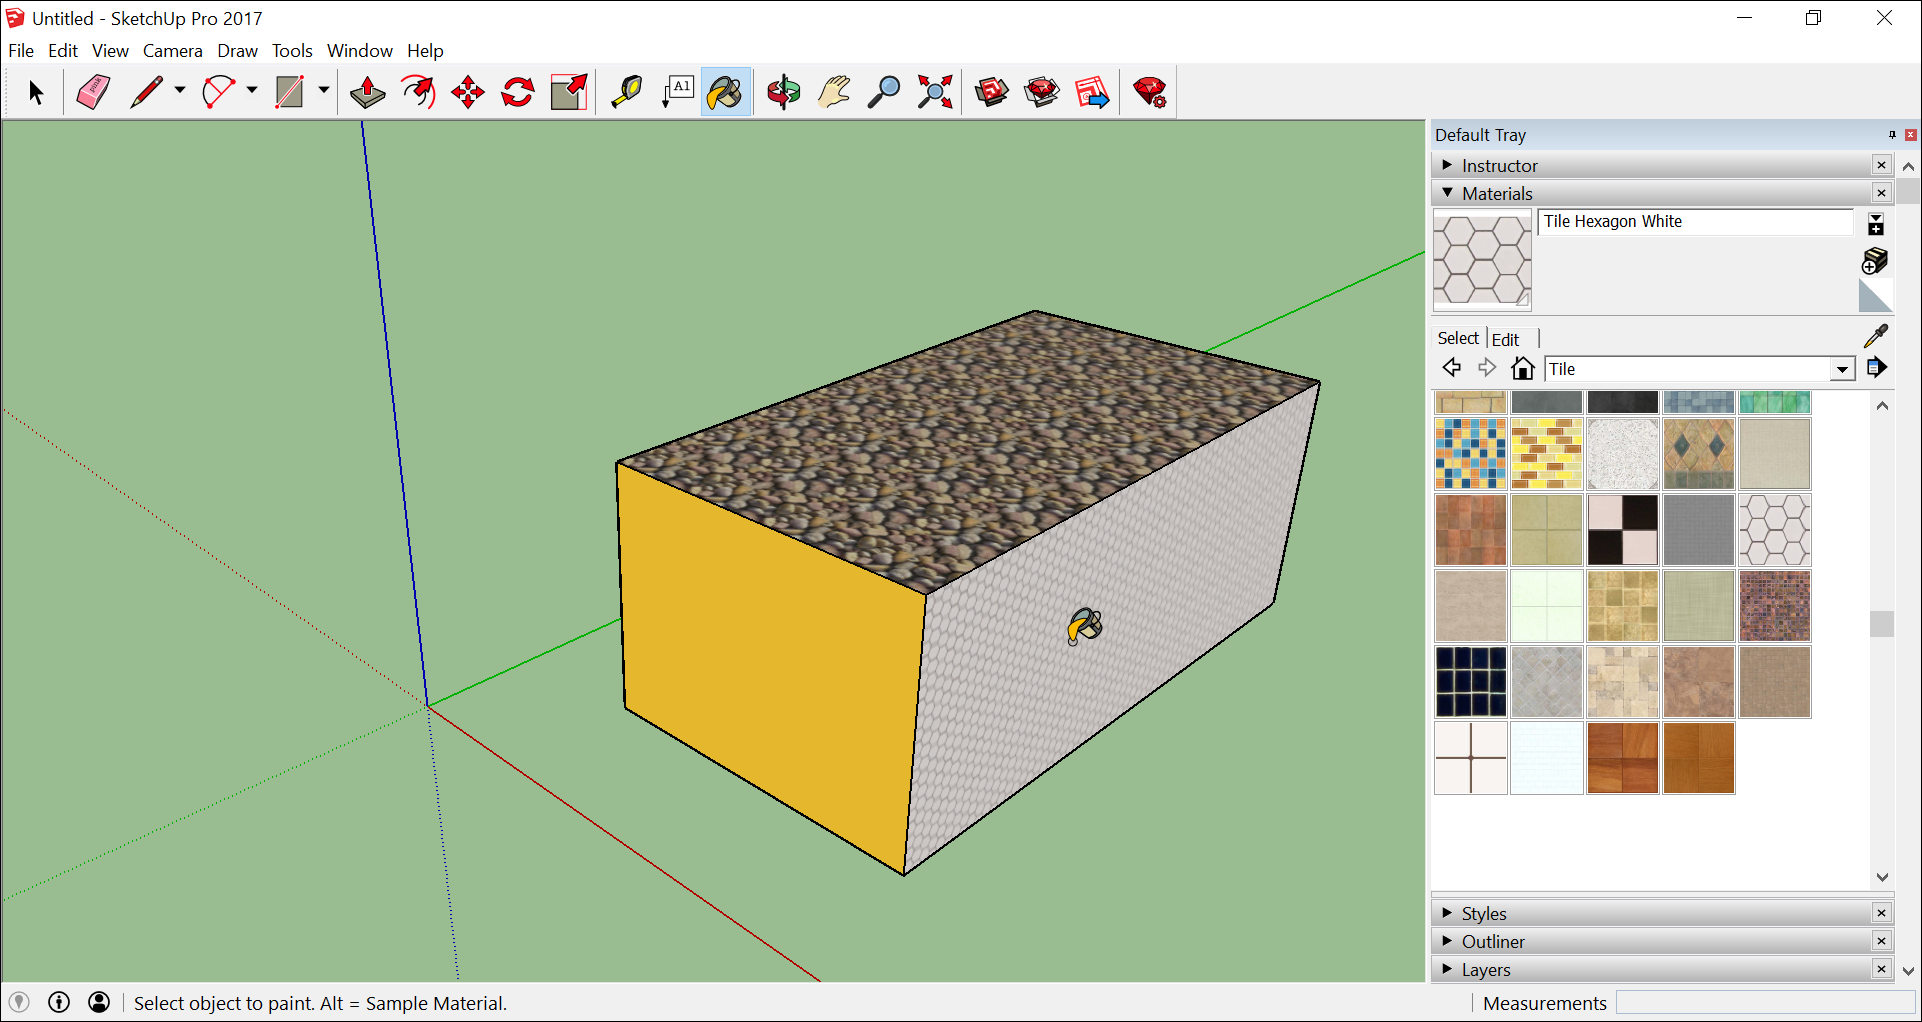 Aplique materiais a um modelo em 3D.